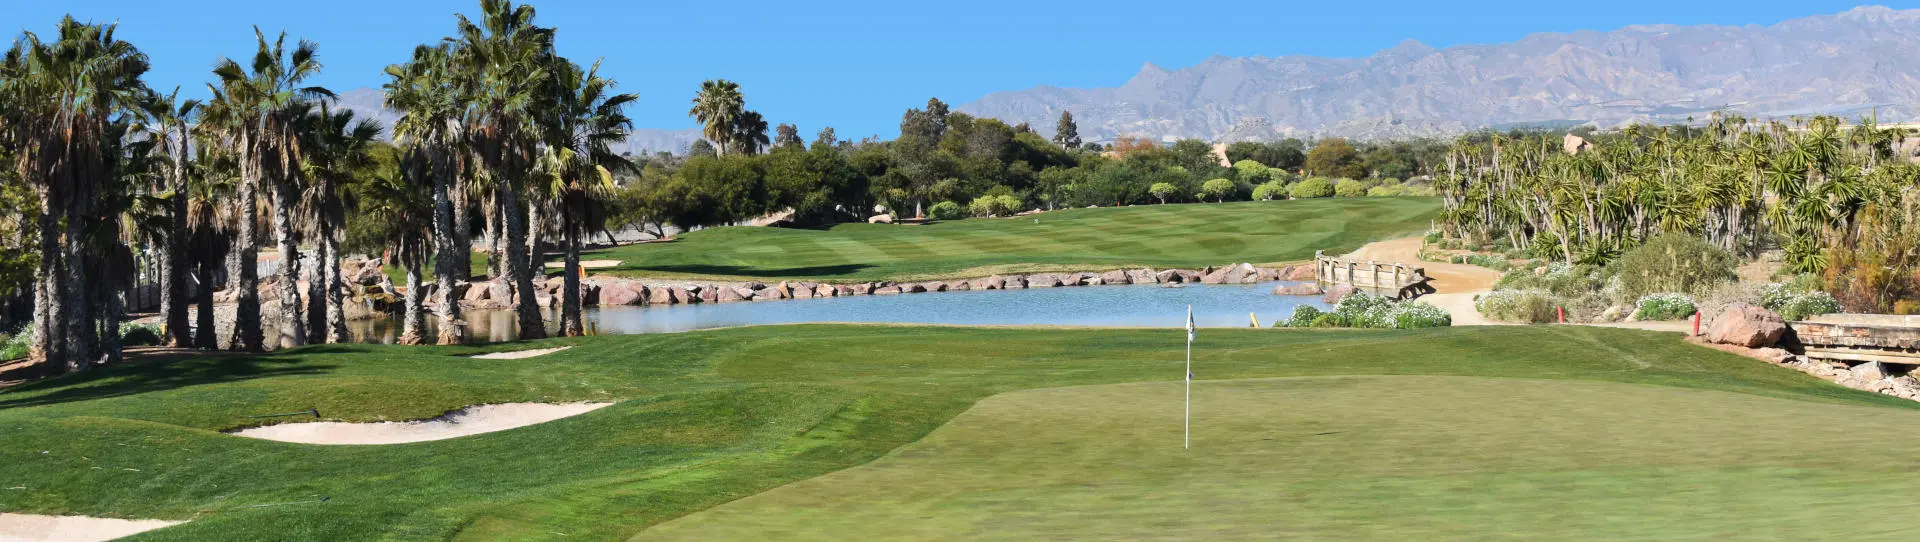 Spain golf courses - Desert Springs Resort & GC - Photo 1